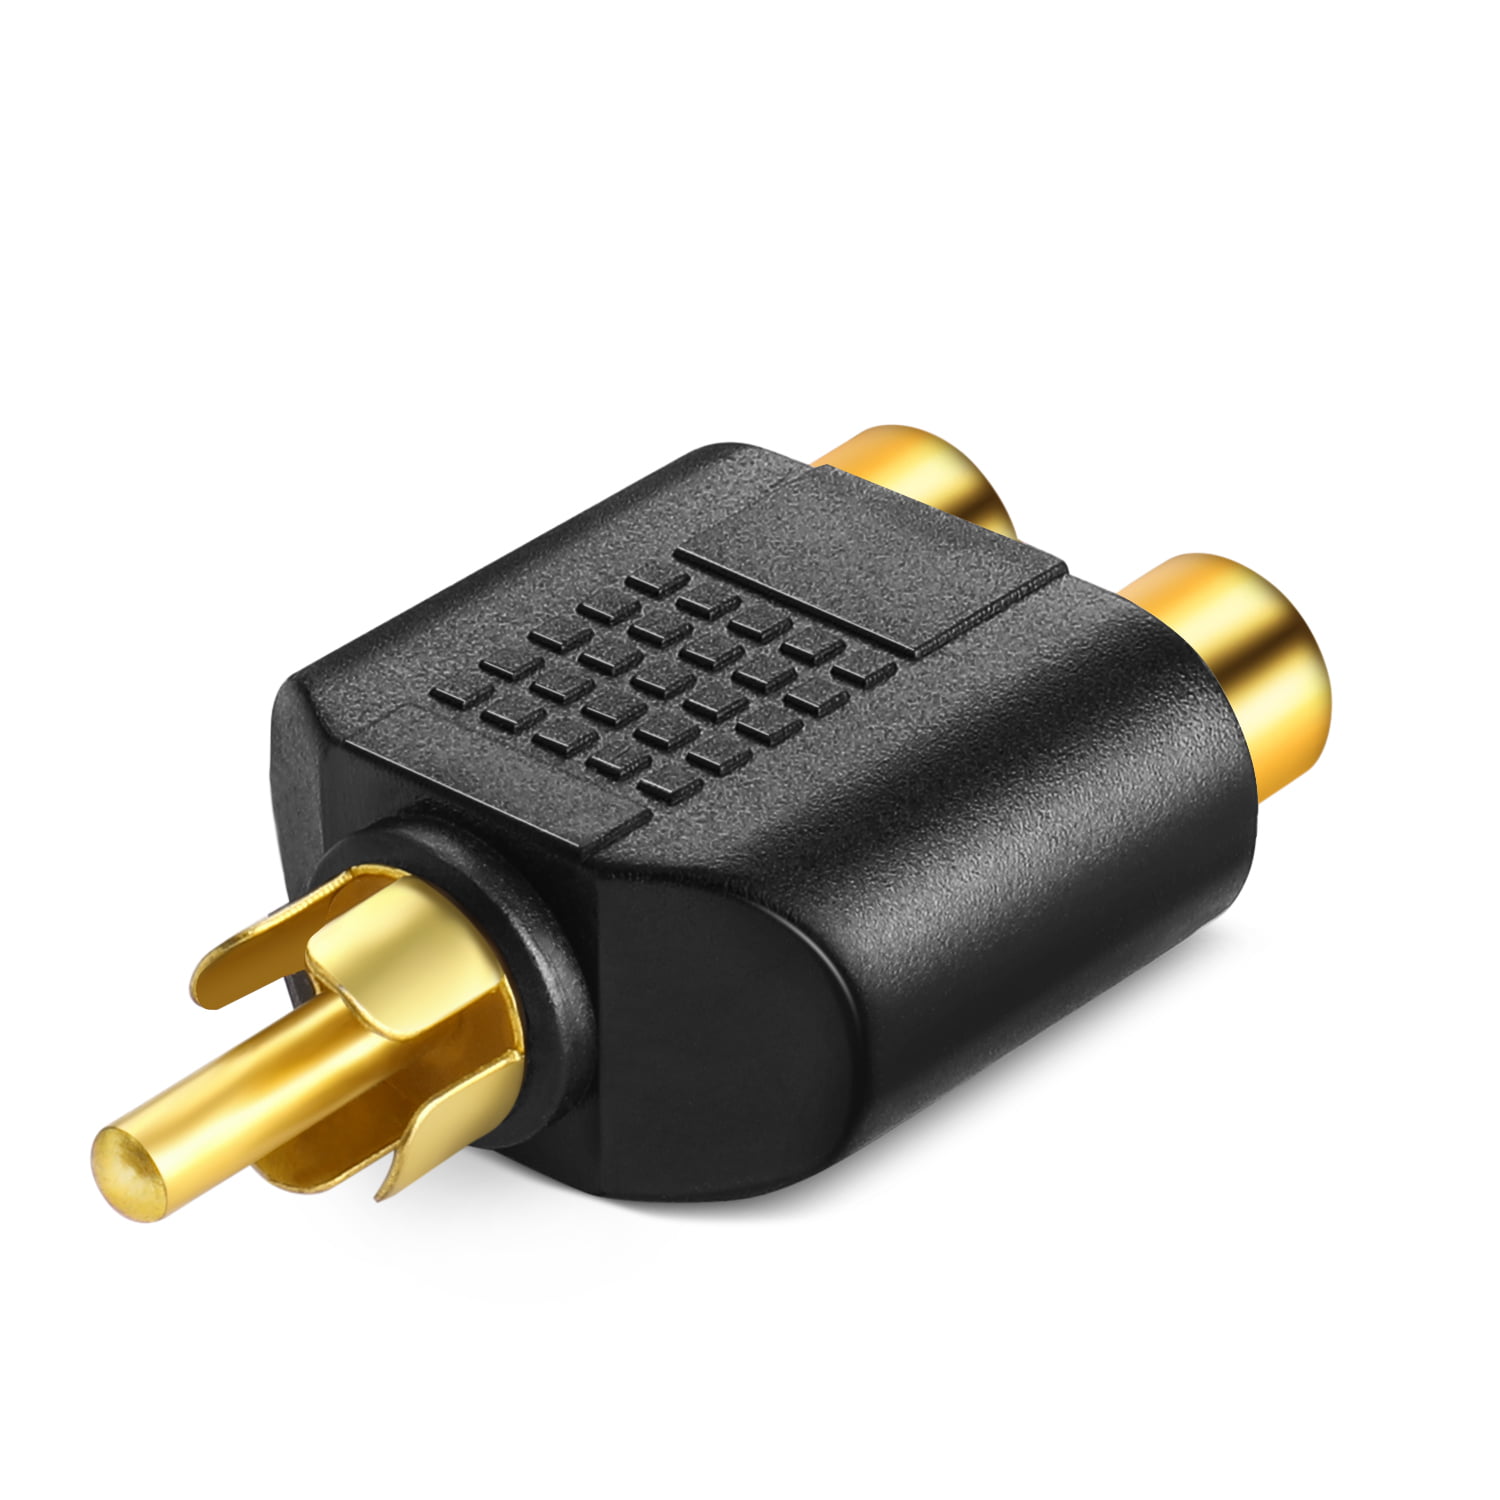 2 Pcs Gold Plated AV Audio Splitter Plug RCA Adapter 1 Male to 2 Female UE 